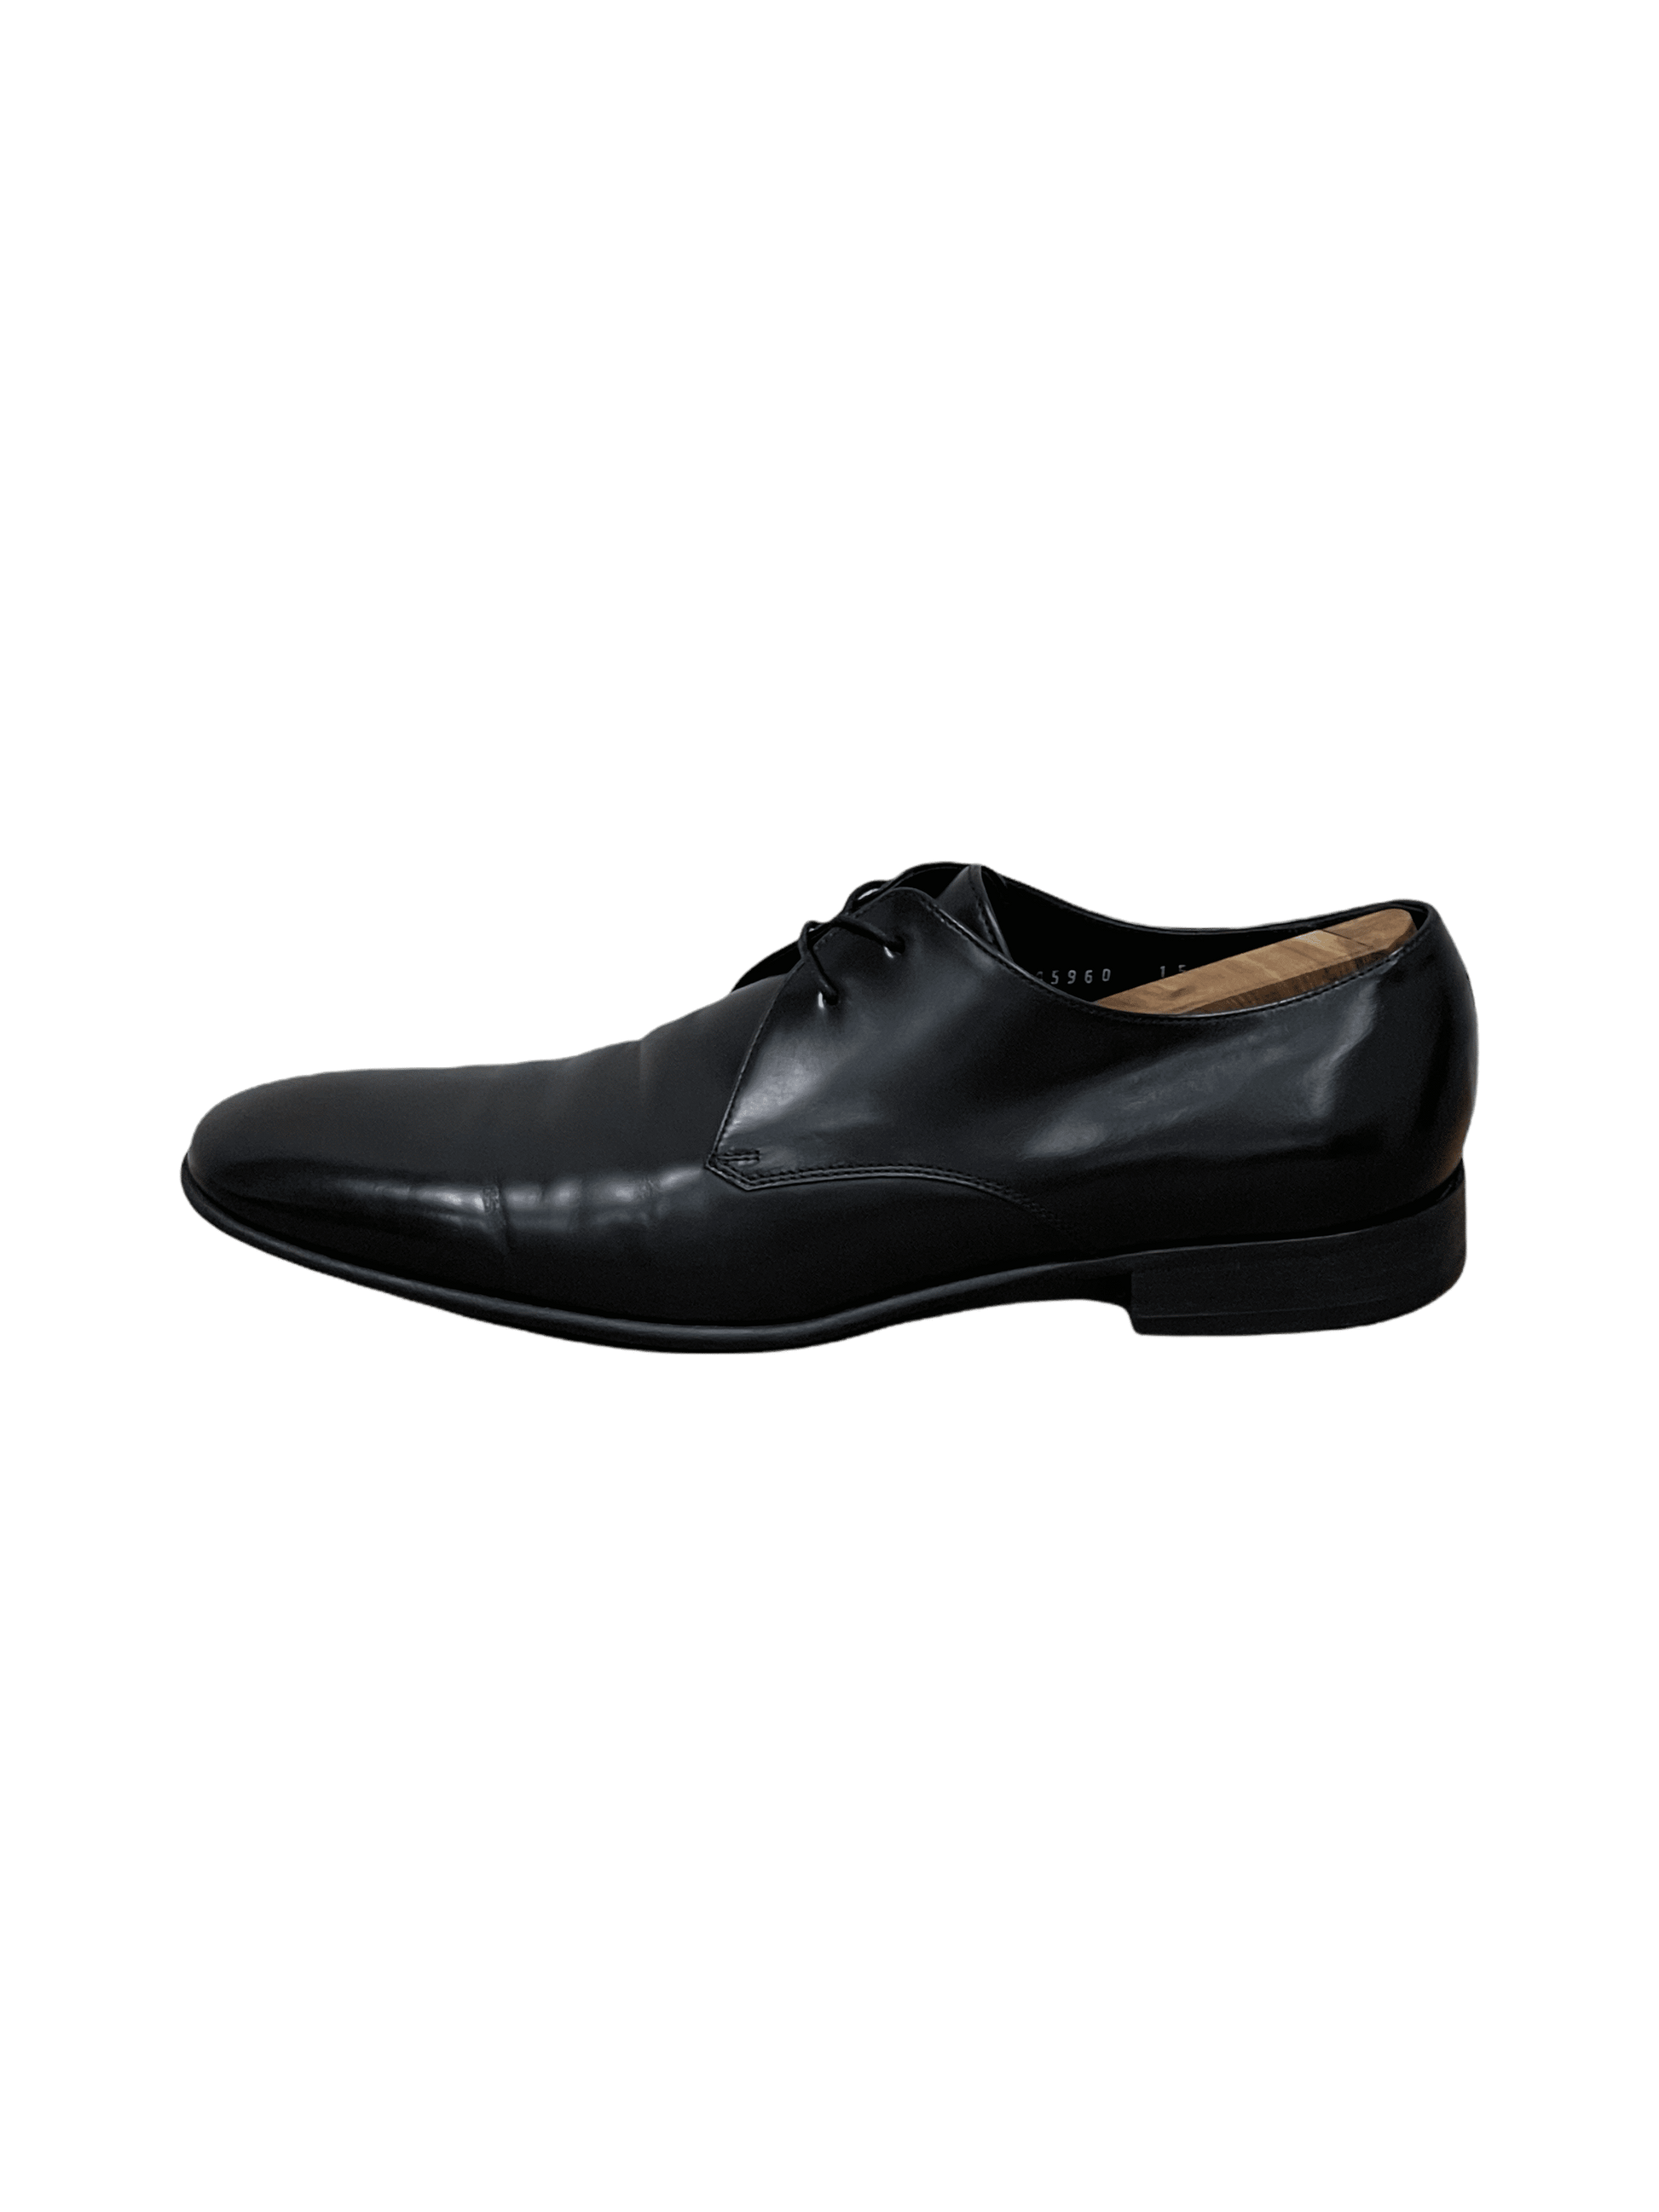 Salvatore Ferragamo Black Leather Plain Toe Dress Shoes 8 US